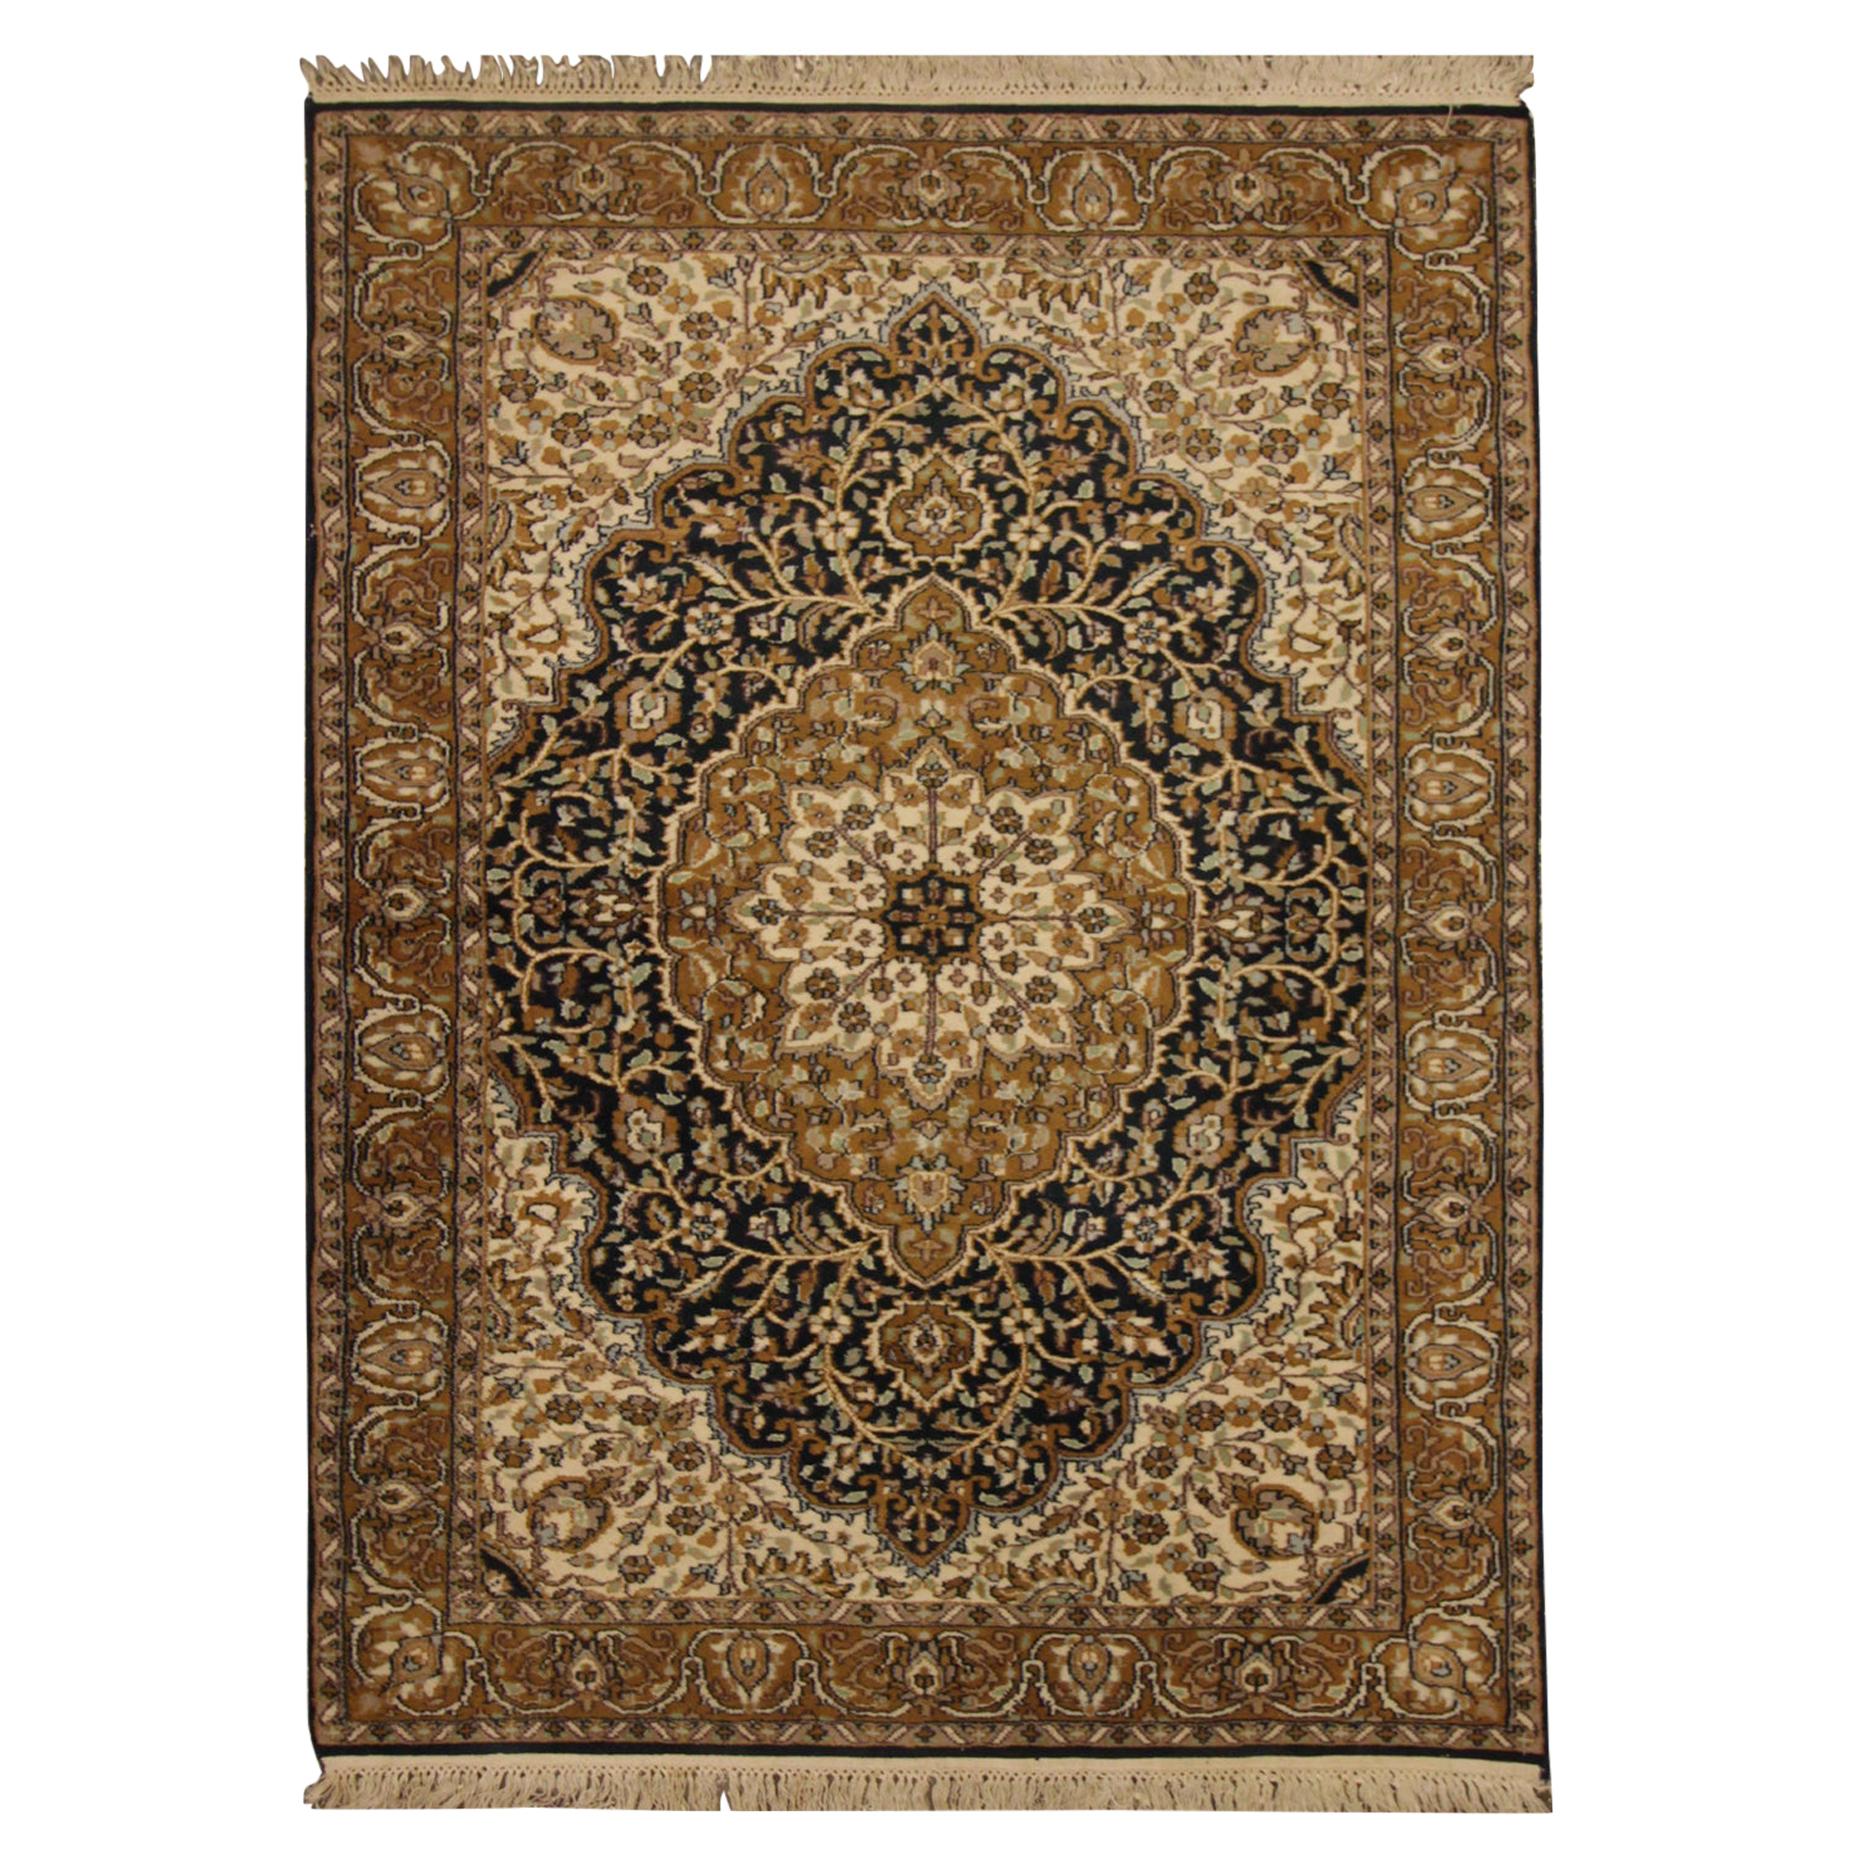 Handgefertigter Teppich Qualität Vintage Indischer Teppich Orientalische Creme Wolle Wohnzimmerteppich